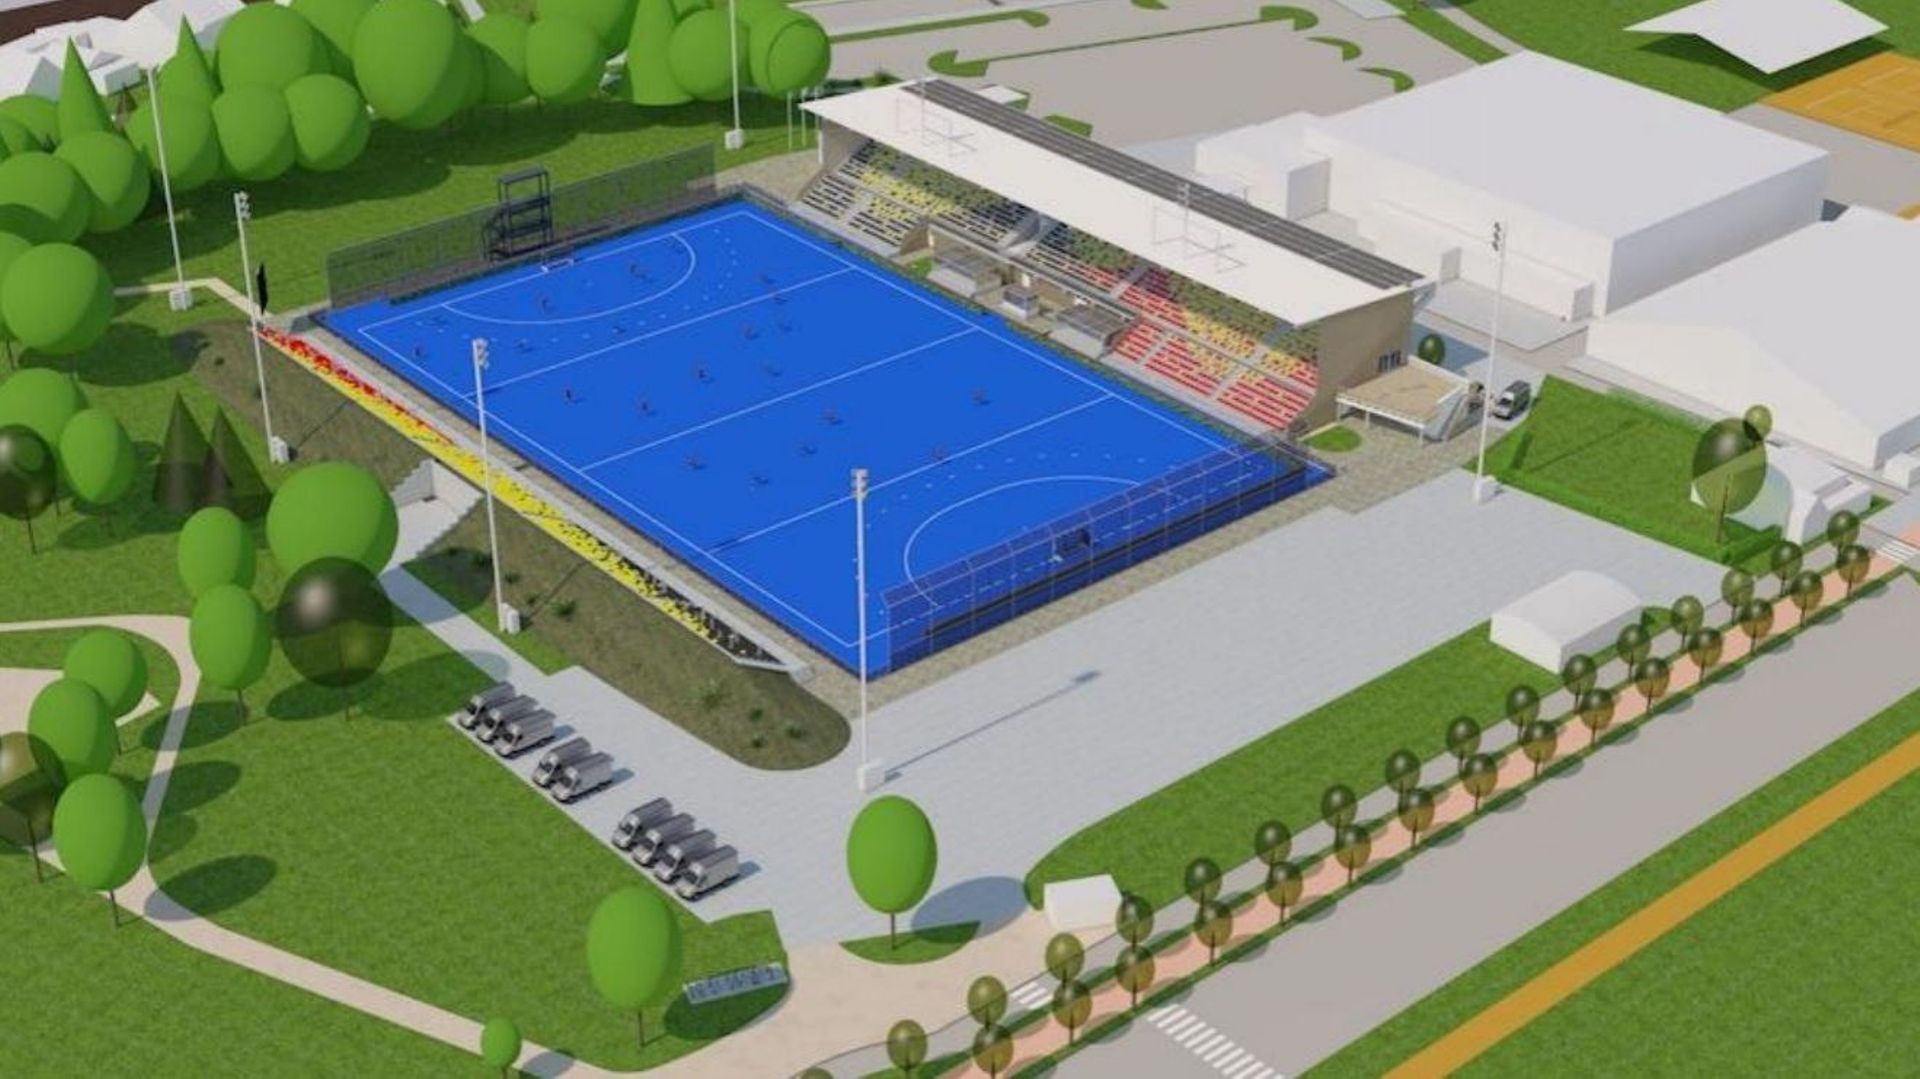 Wafer: De officiële start van de werkzaamheden aan het regionale hockeystadion waar het WK 2026 zal plaatsvinden